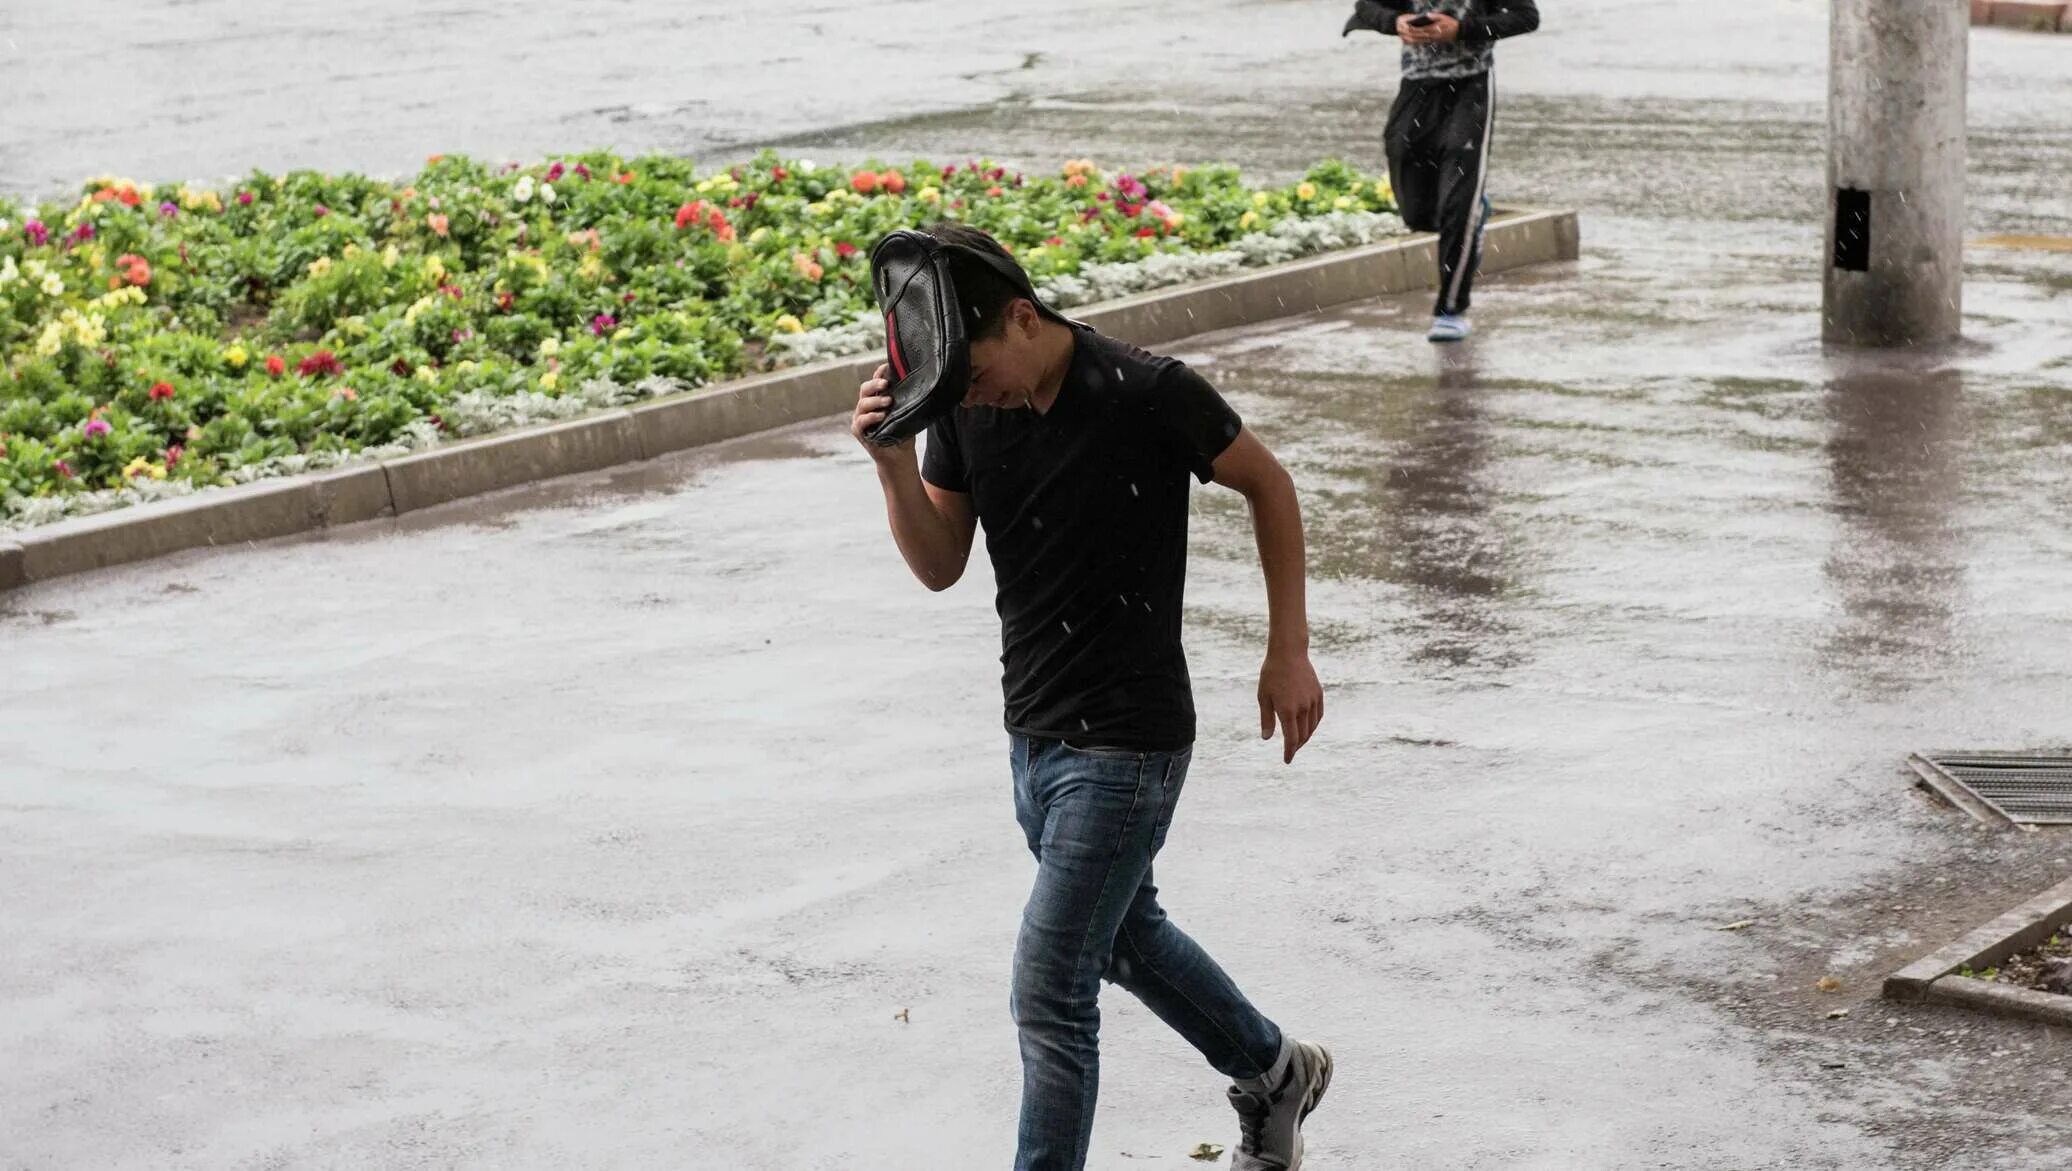 Дождь в Бишкеке. Ветры Кыргызстана. Ливень в Бишкеке. Климат Кыргызстана дождь.